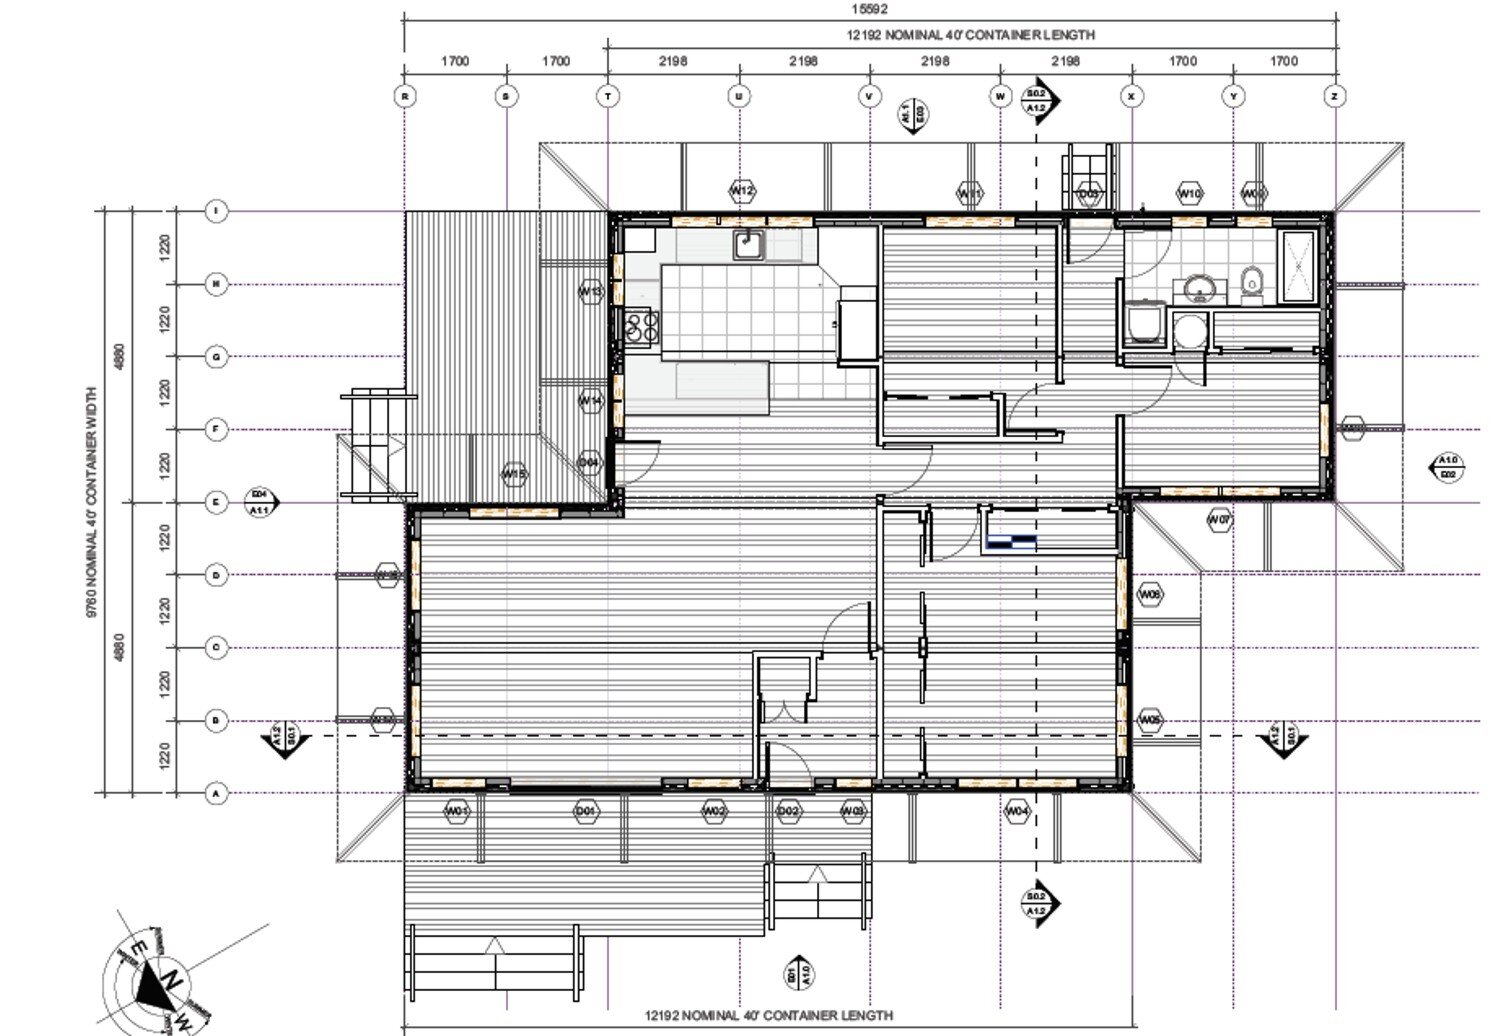  / / Floor plan layout option 